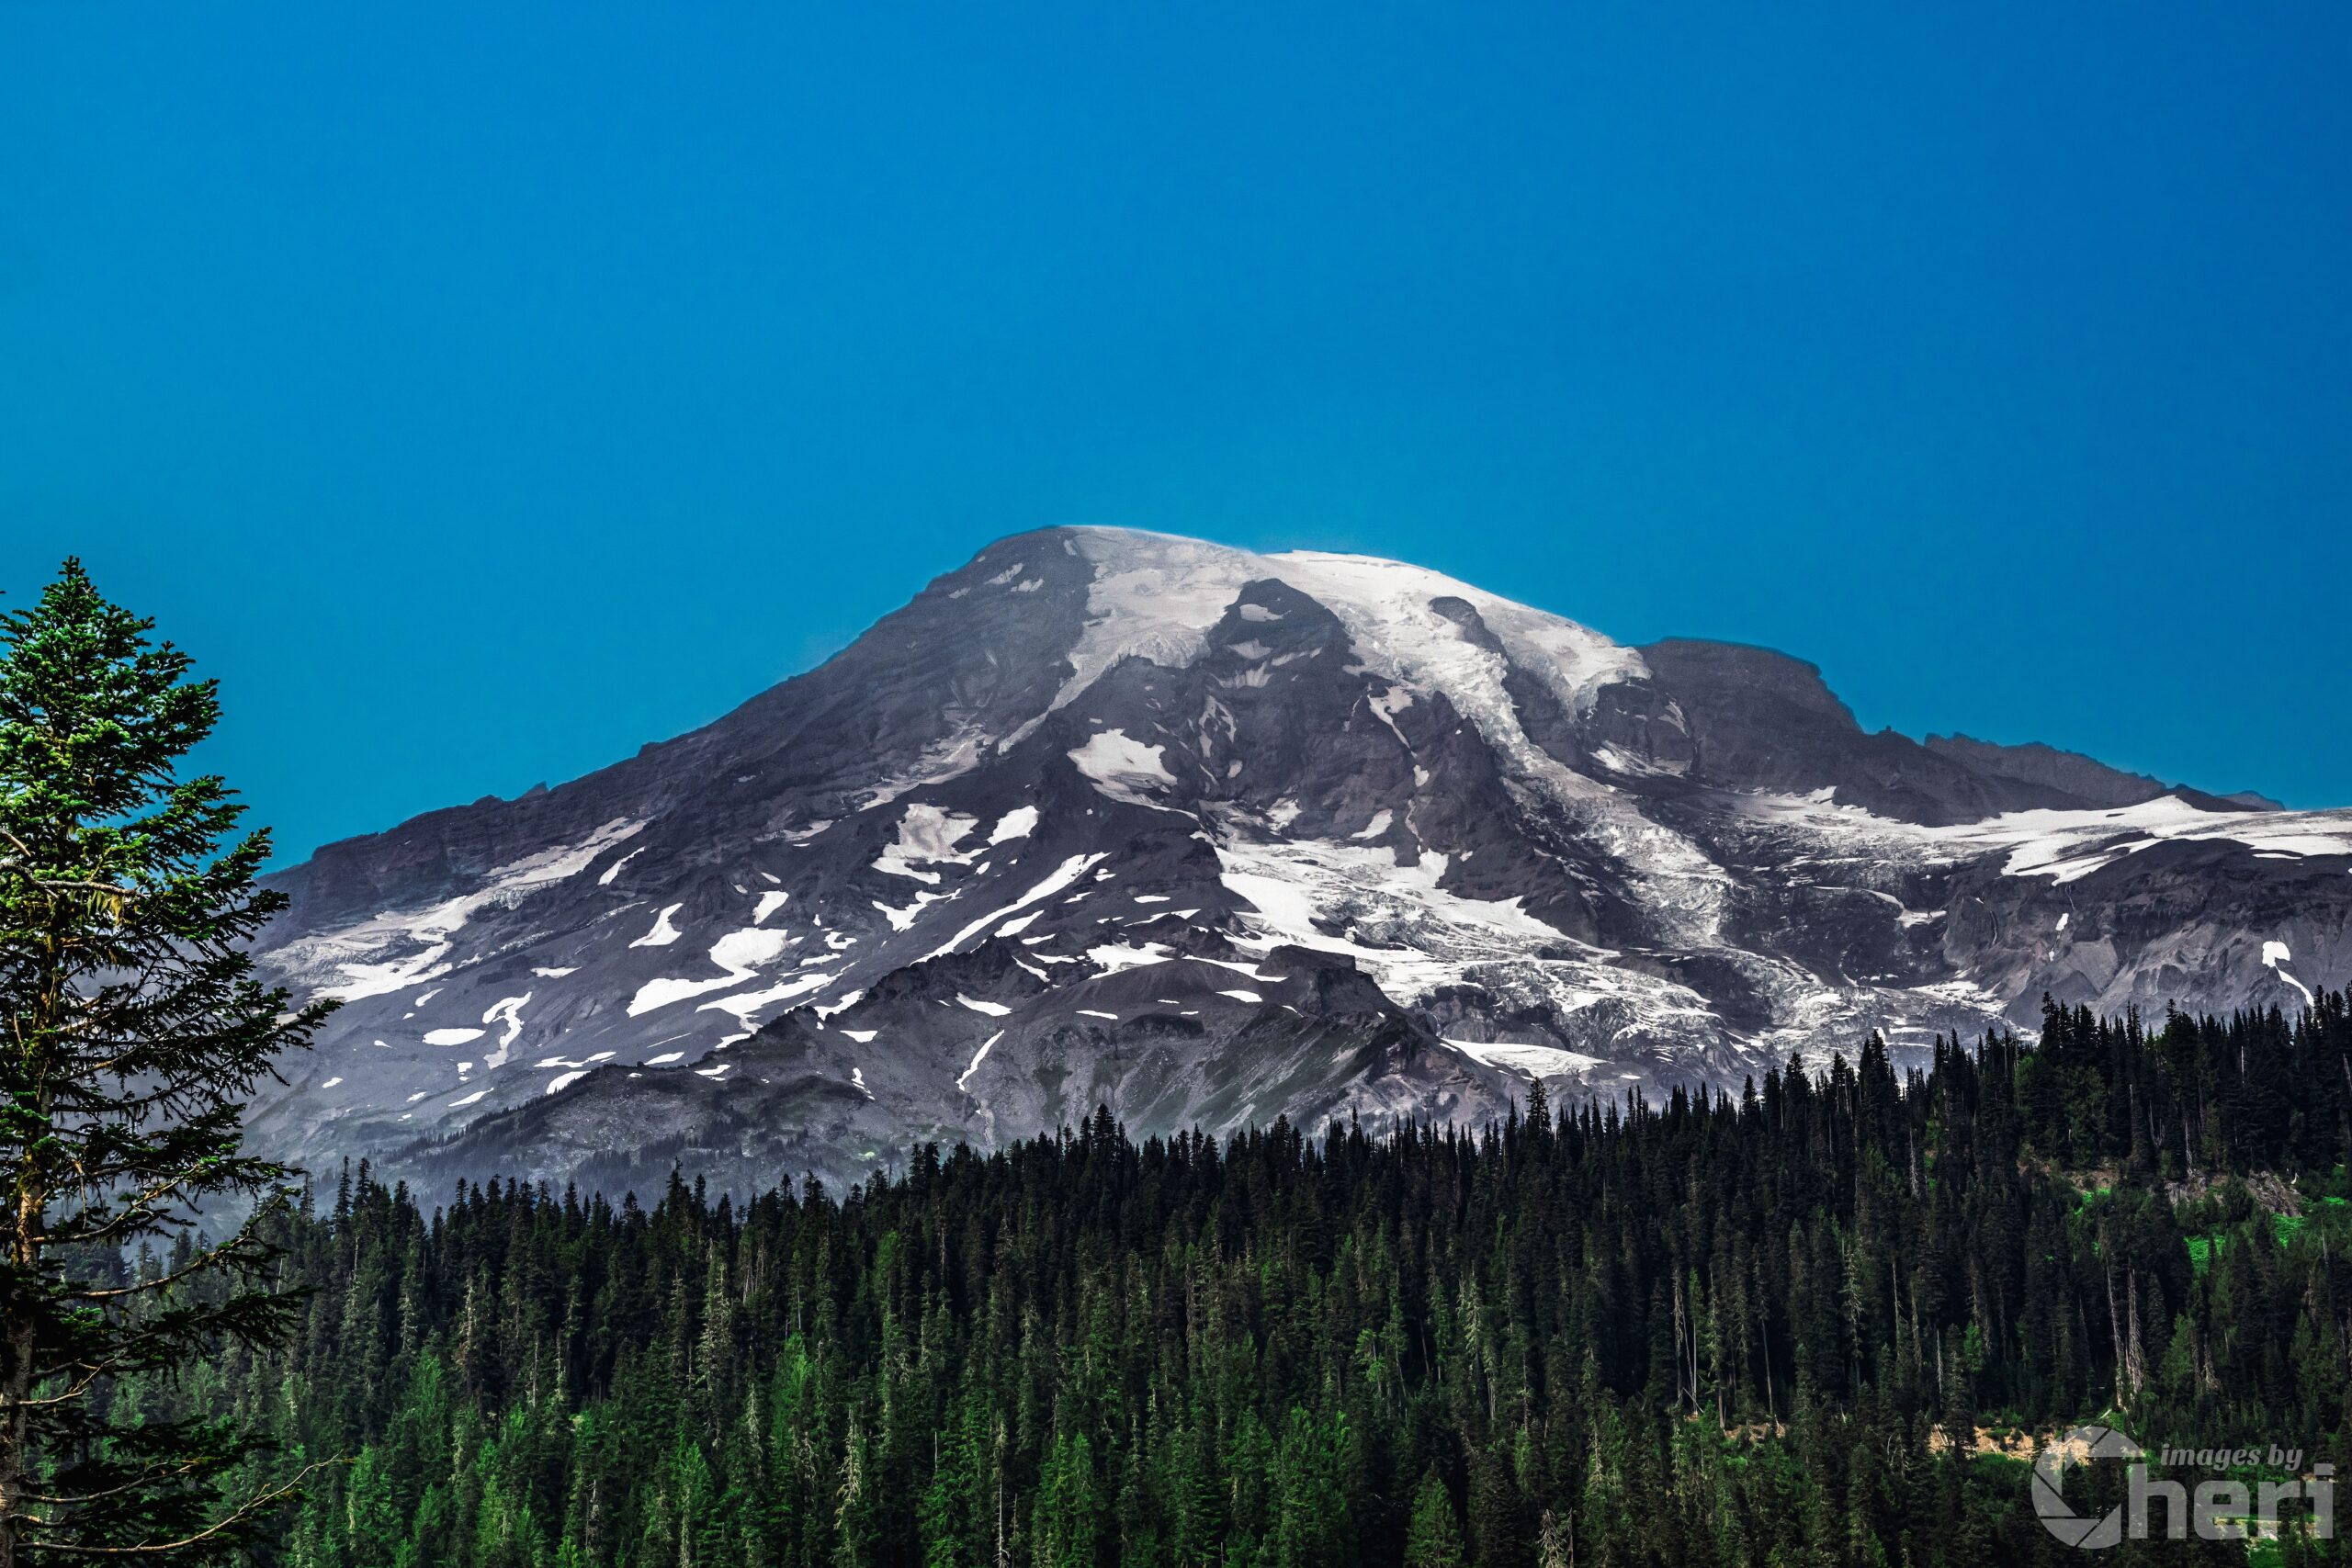 Peak Perfection: Mt. Rainier